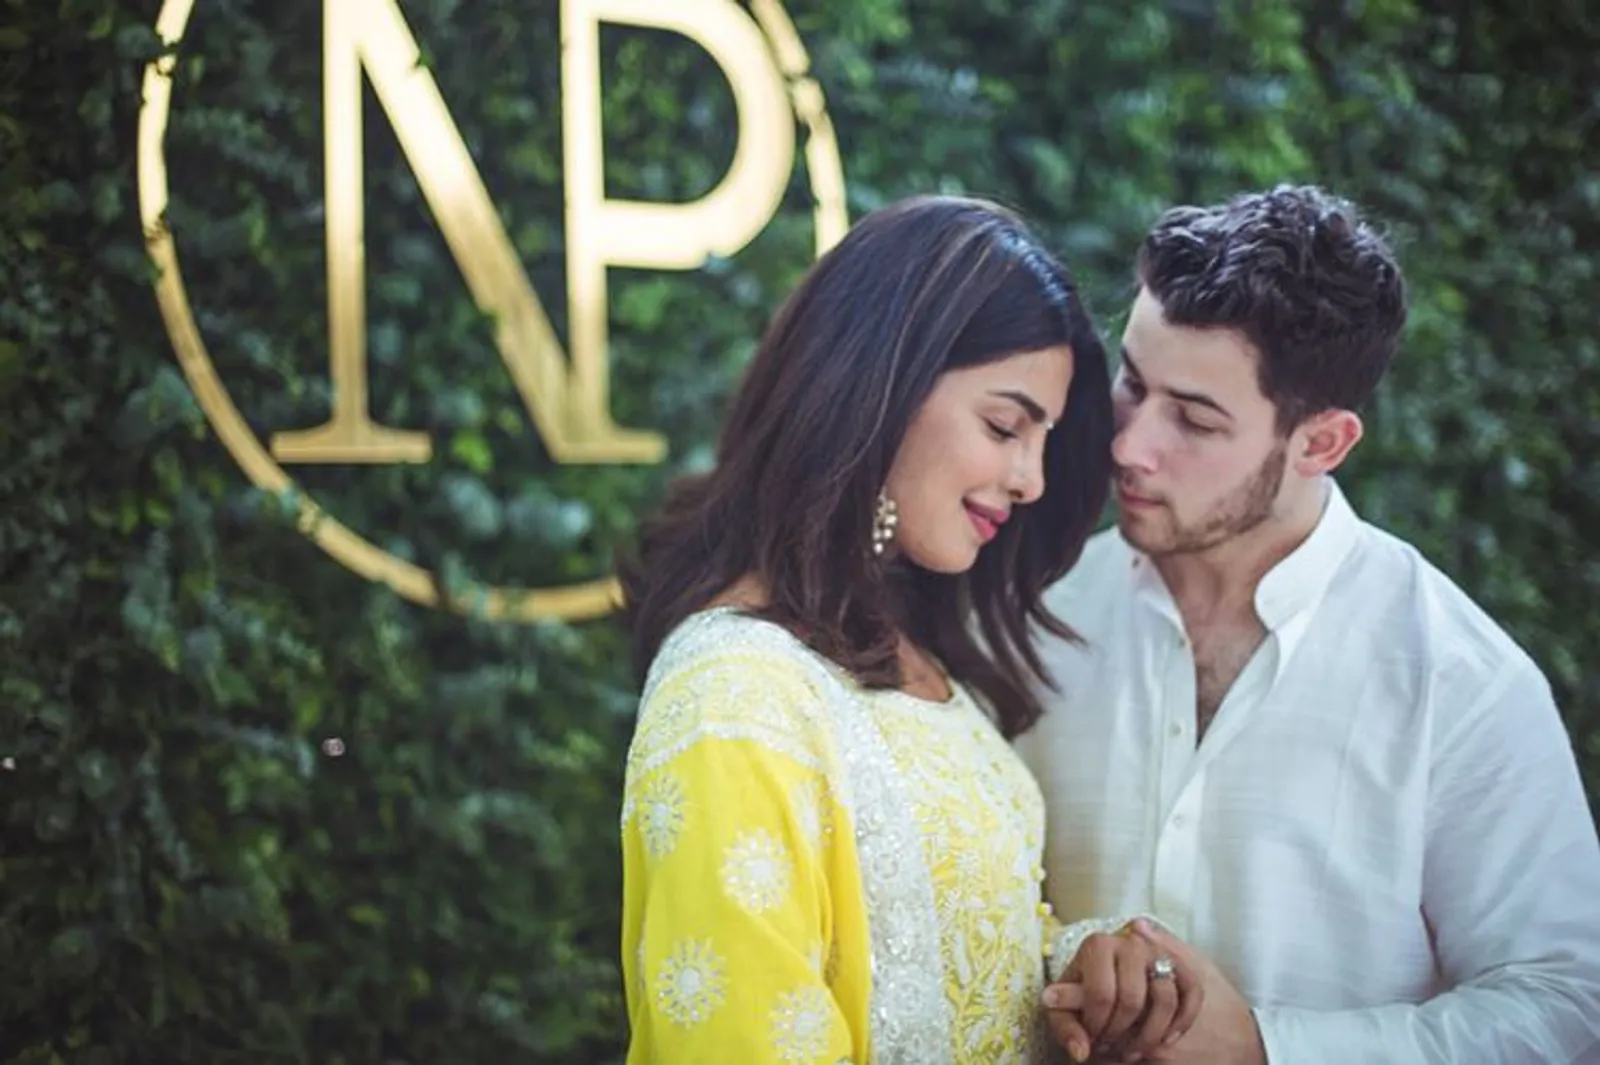 Mengenal Roka, Ritual Pertunangan Priyanka Chopra dan Nick Jonas